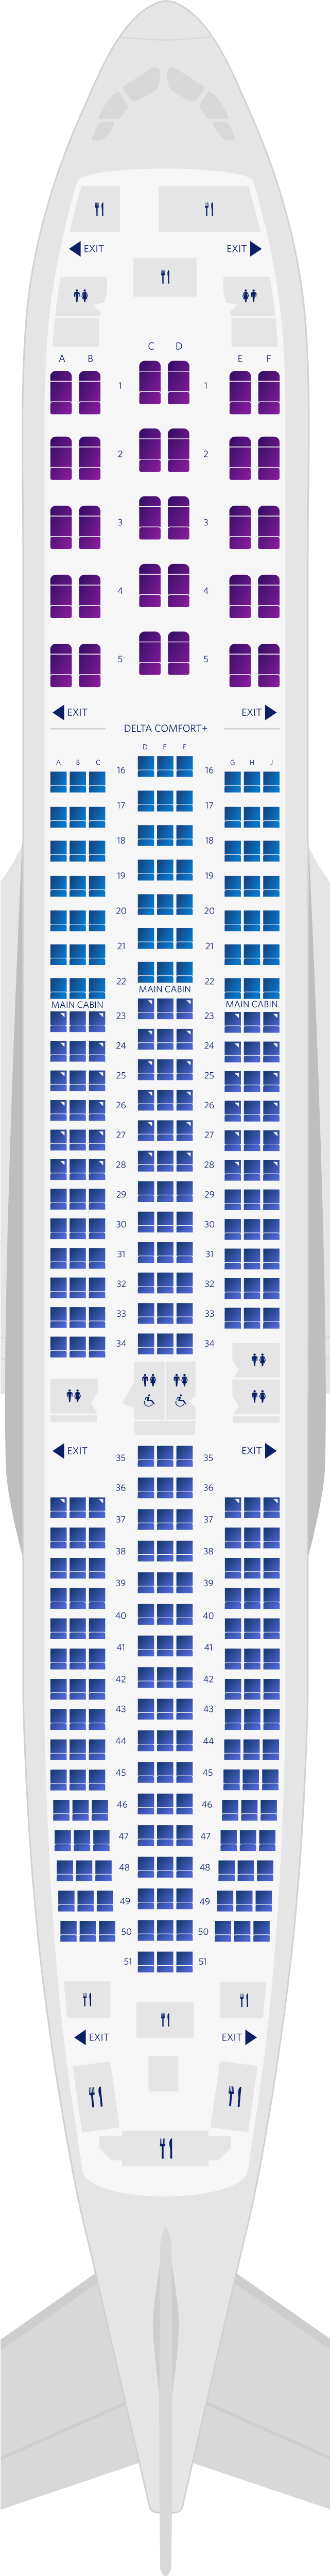 Plan des sièges de l'Airbus A350-900 3